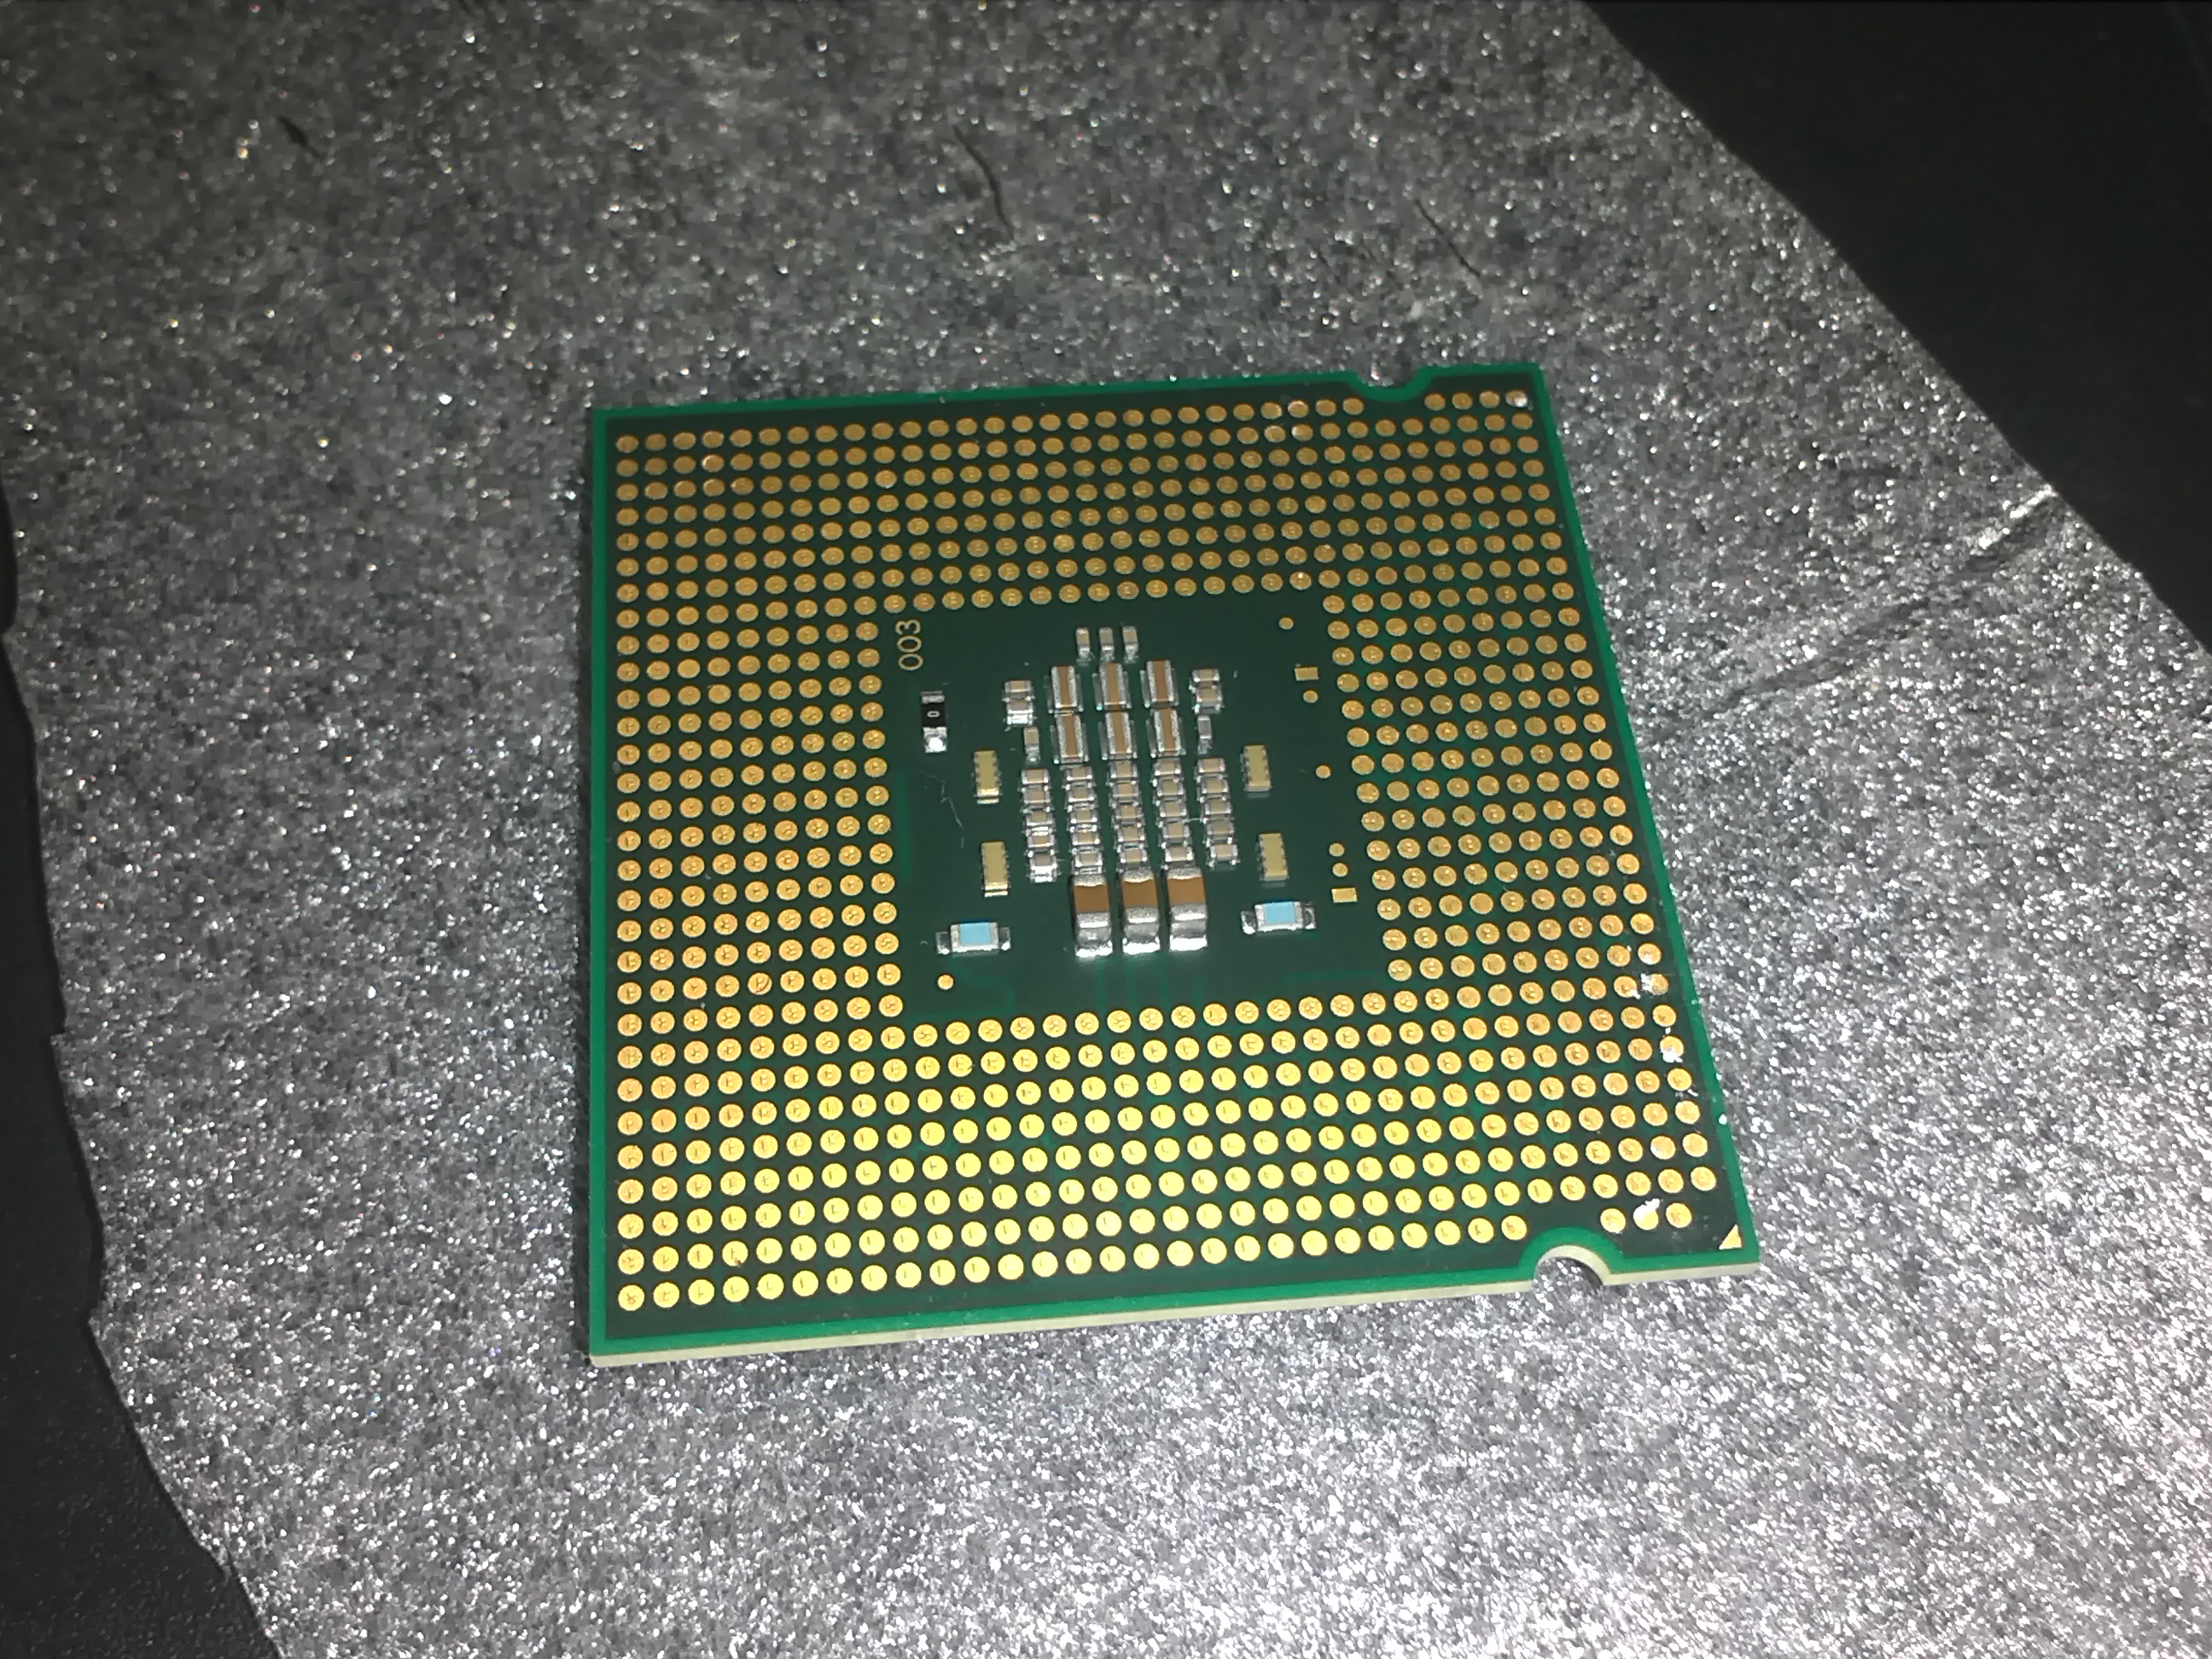 Интел 4600